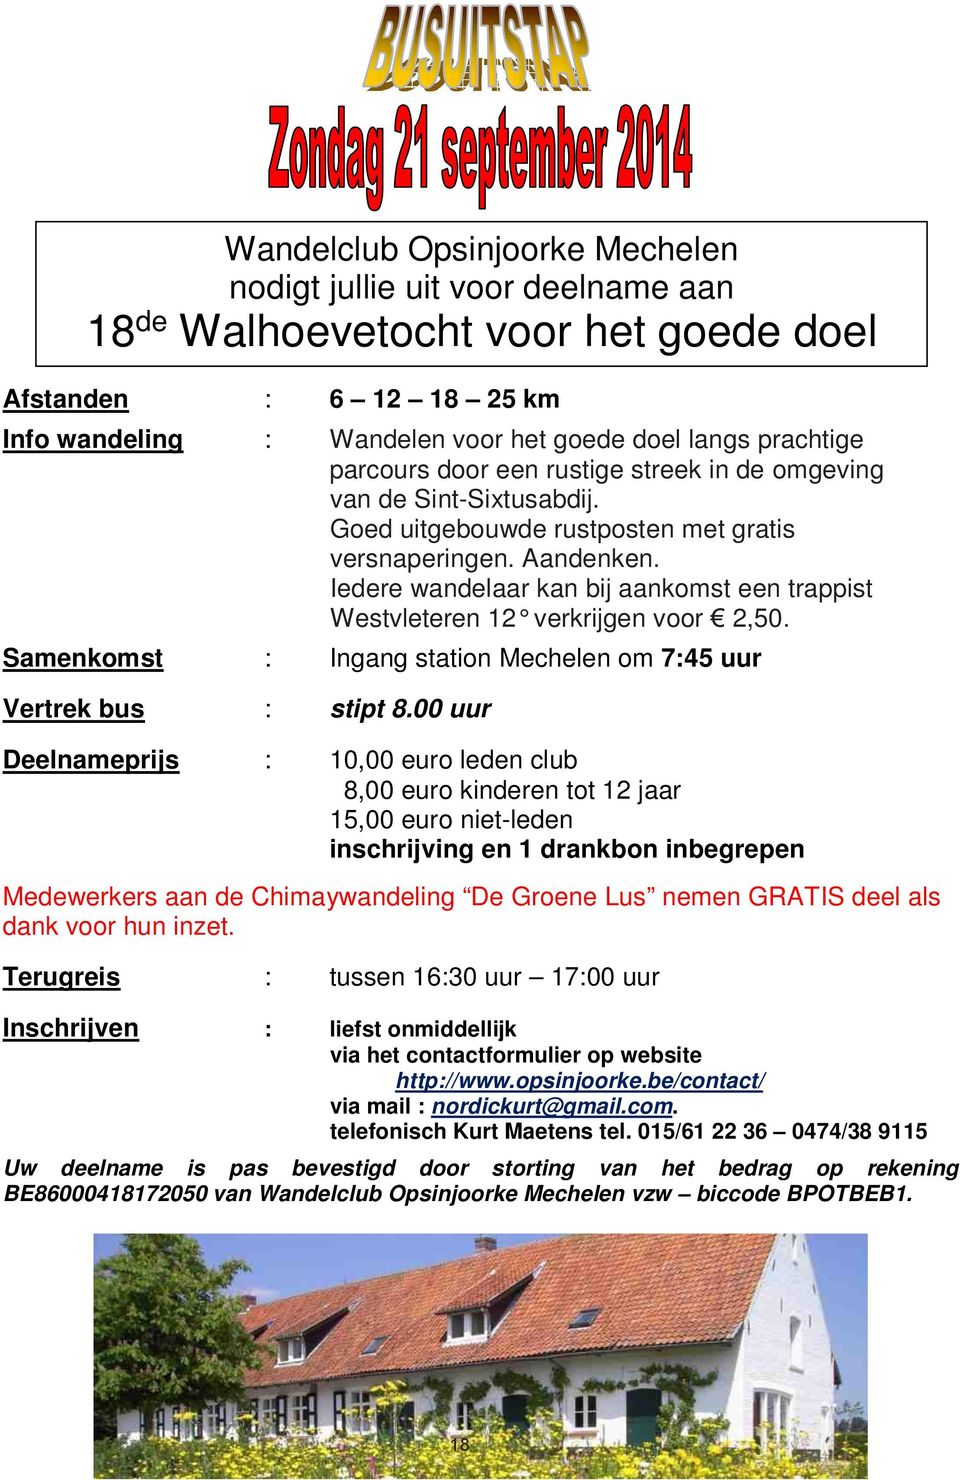 Iedere wandelaar kan bij aankomst een trappist Westvleteren 12 verkrijgen voor 2,50. Samenkomst : Ingang station Mechelen om 7:45 uur Vertrek bus : stipt 8.